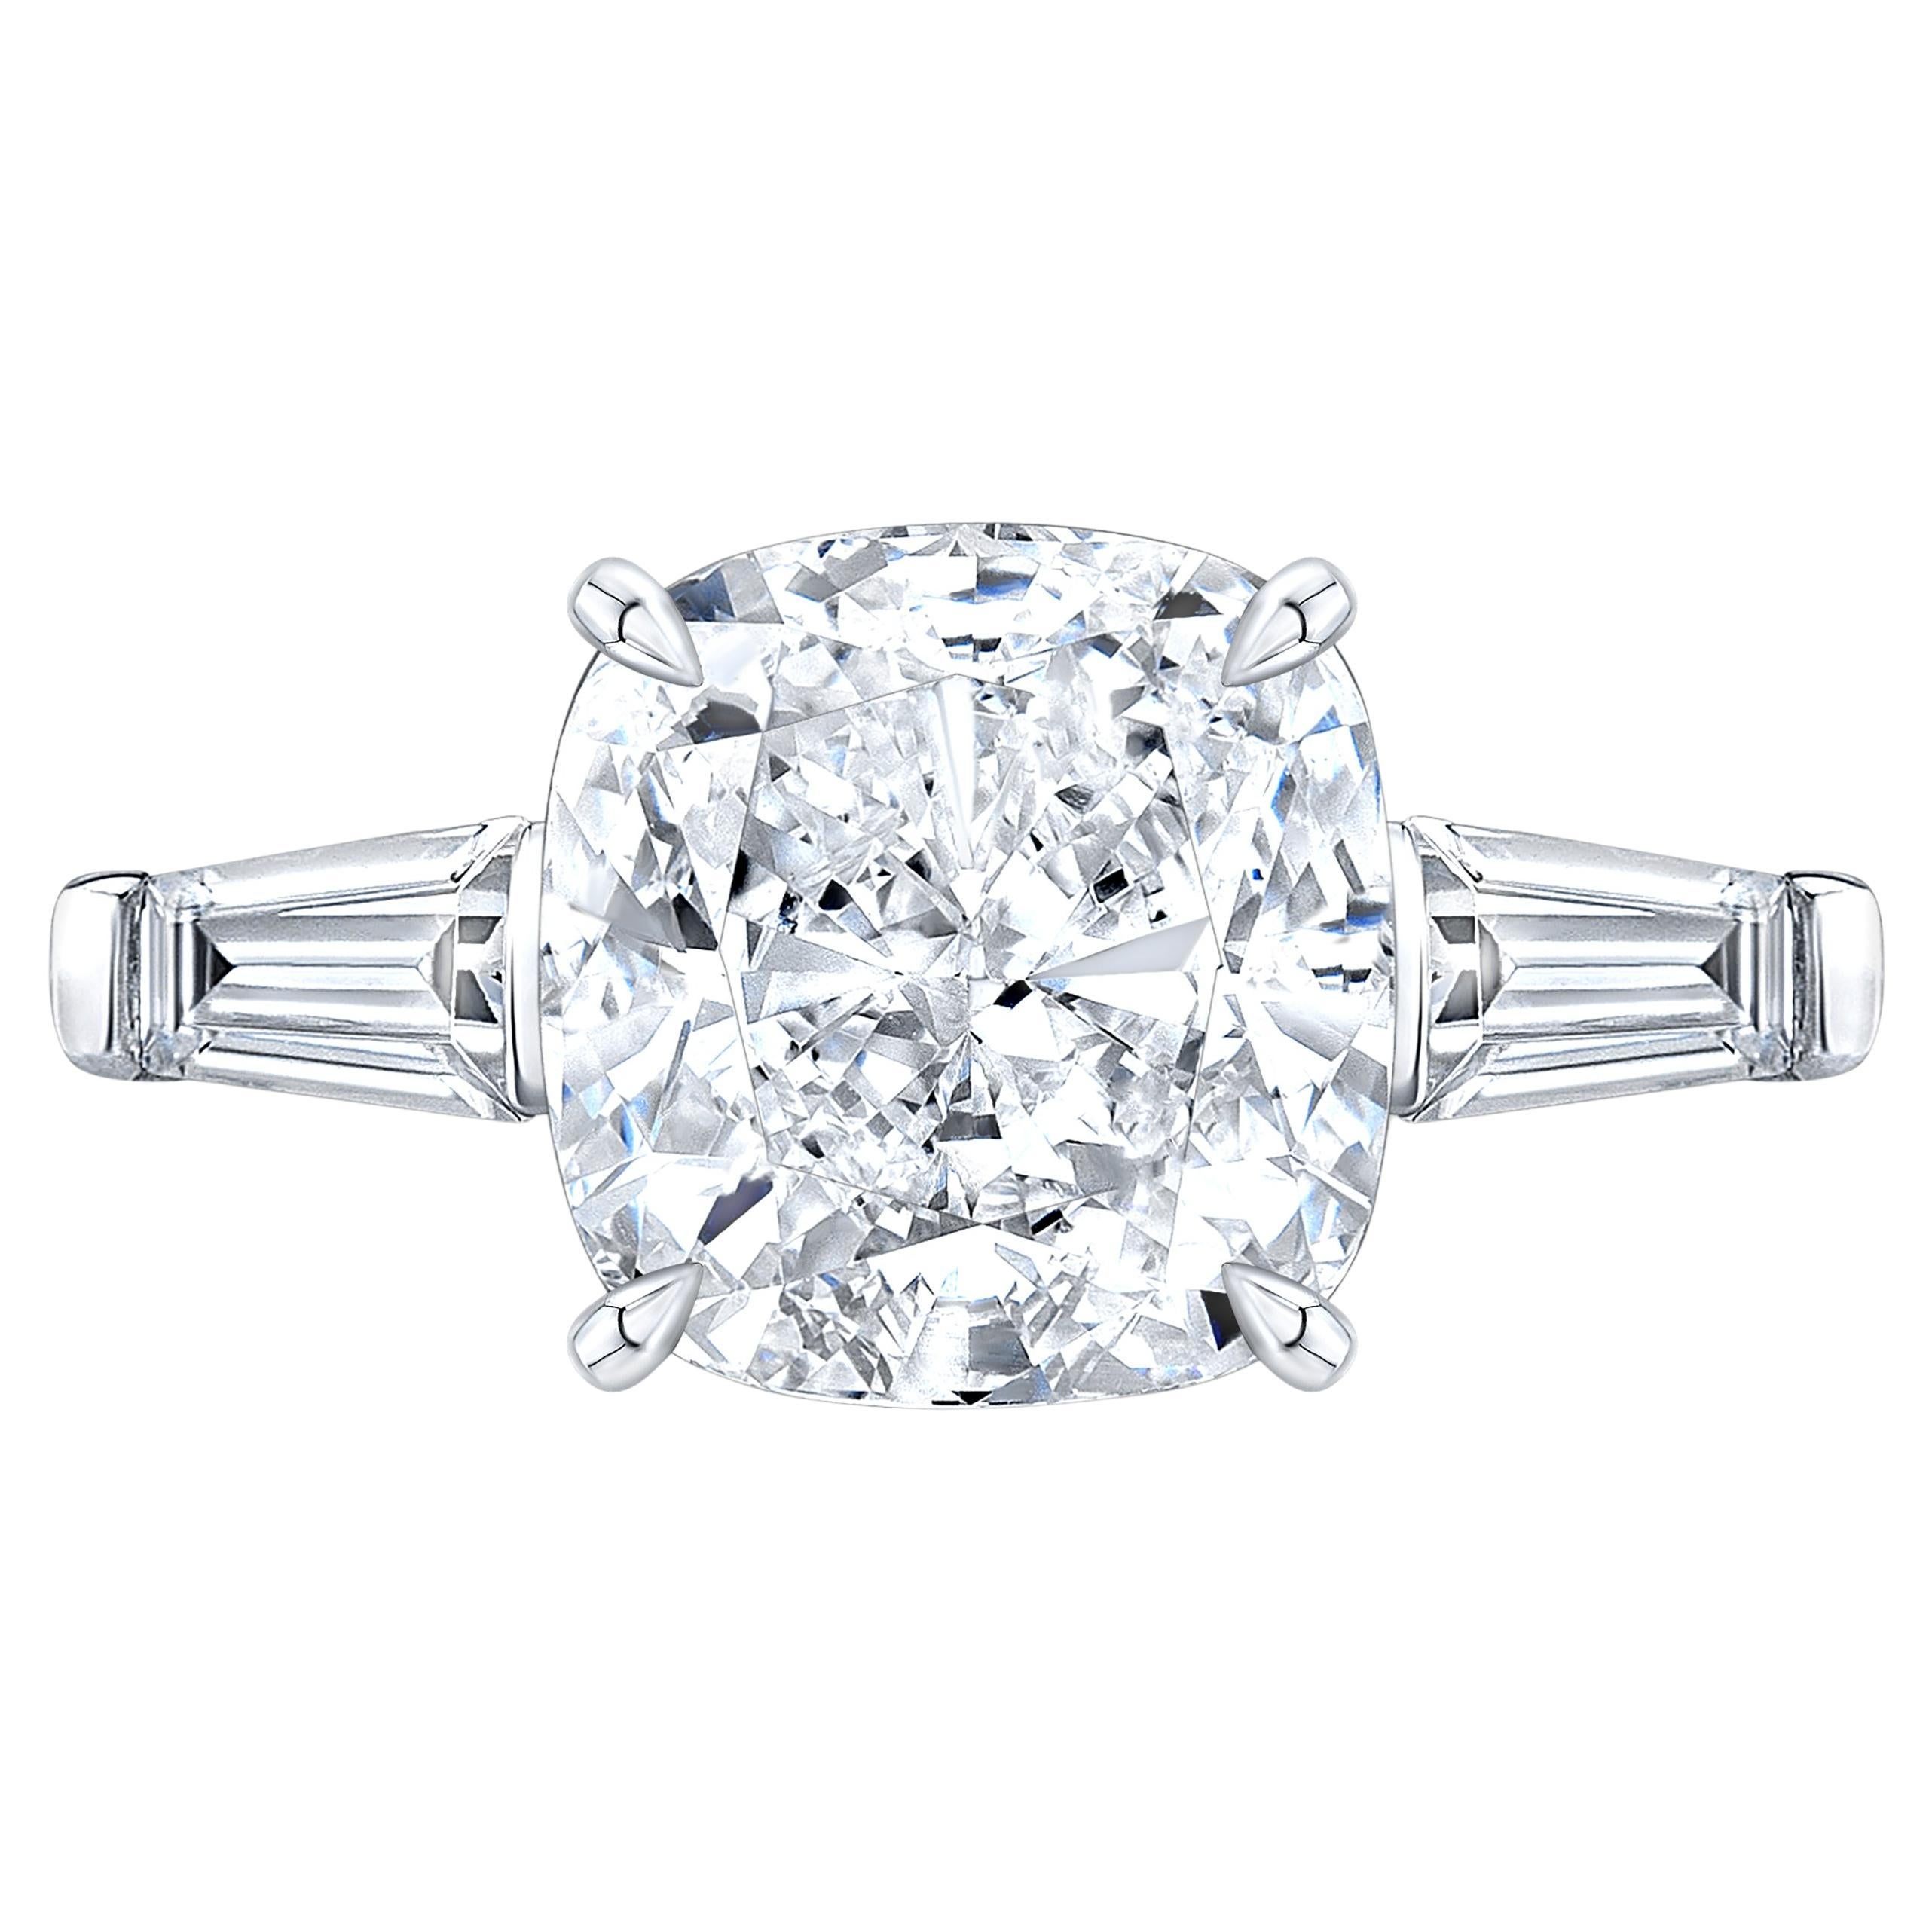 Une bague exquise composée d'un diamant coussin de 5 carats et de deux diamants baguettes effilés sur les côtés. 
La monture est en or blanc massif 18 carats.
D couleur
Clarté VS1
   